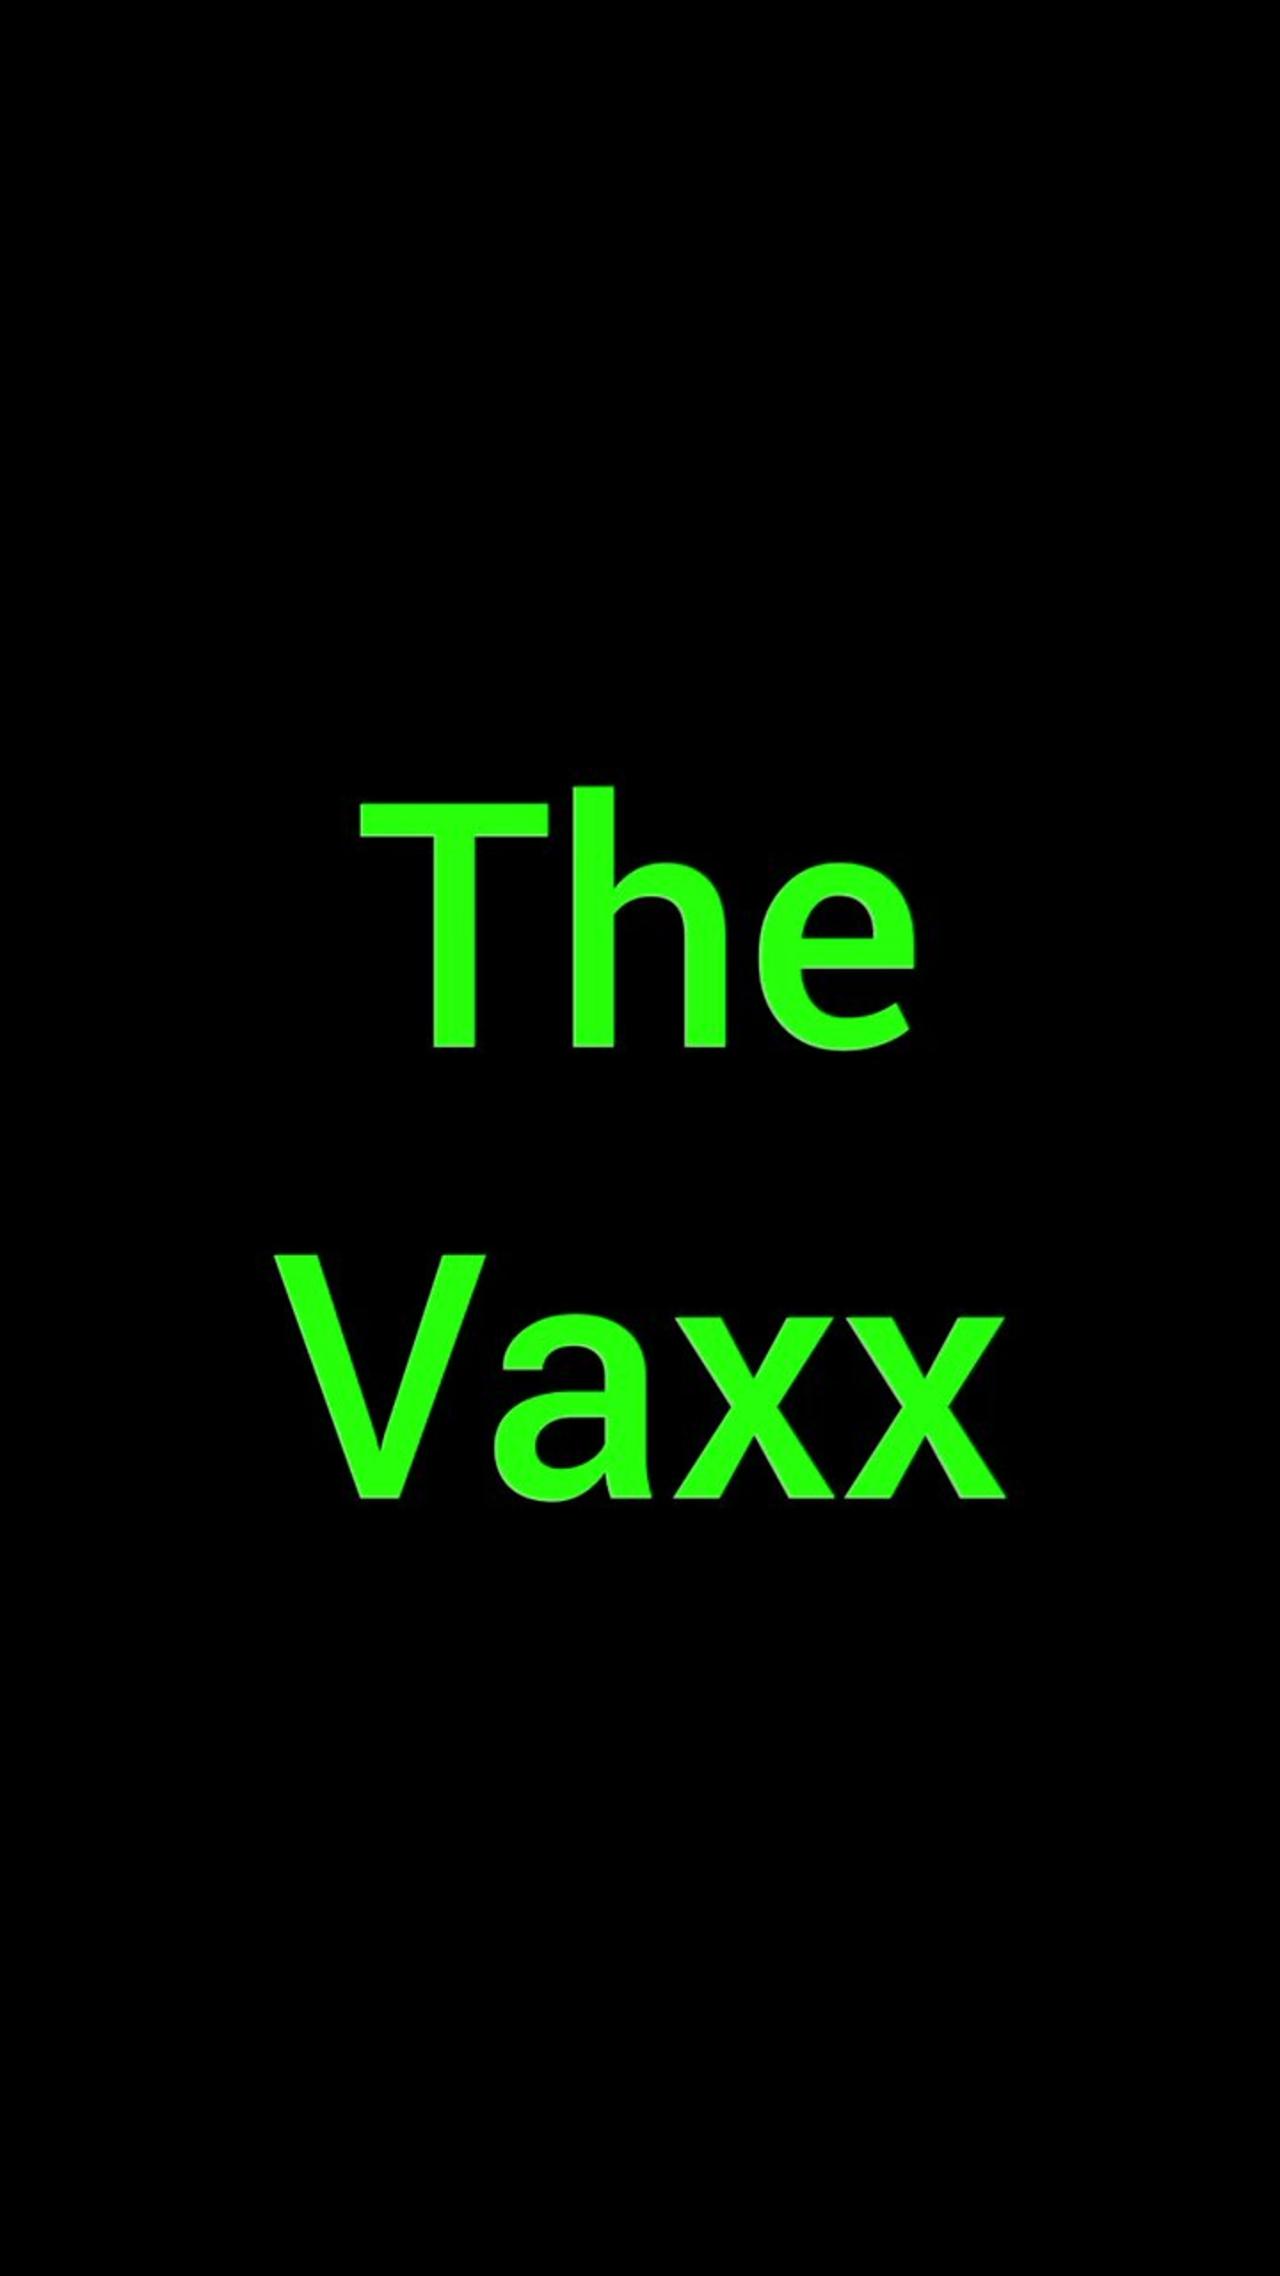 The Vaxx